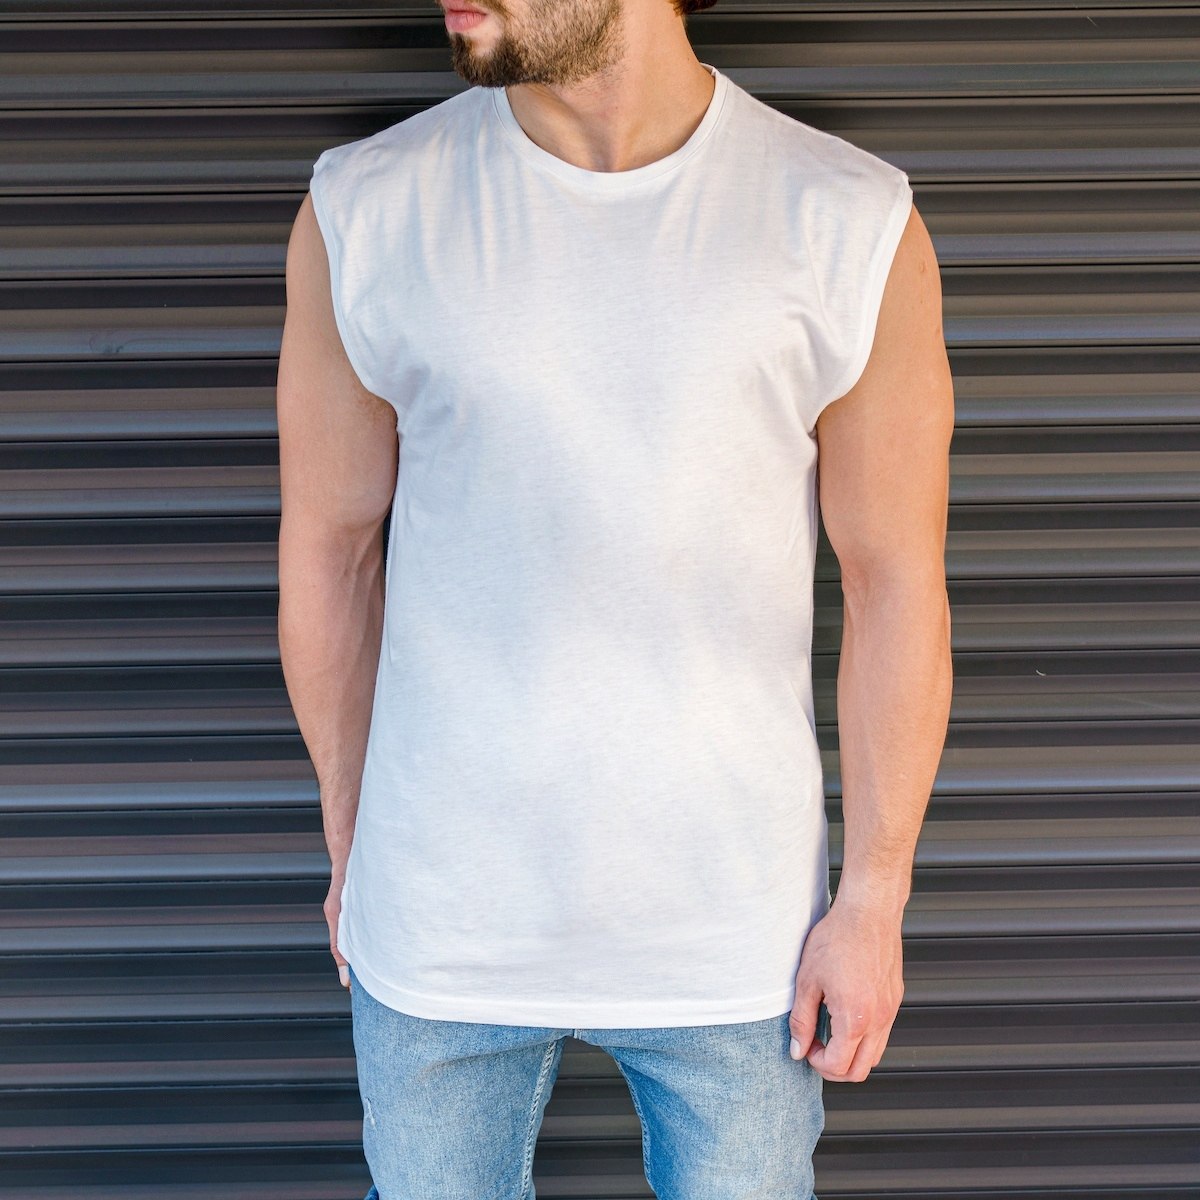 Men's Basic Sleeveless T-Shirt In White - 1